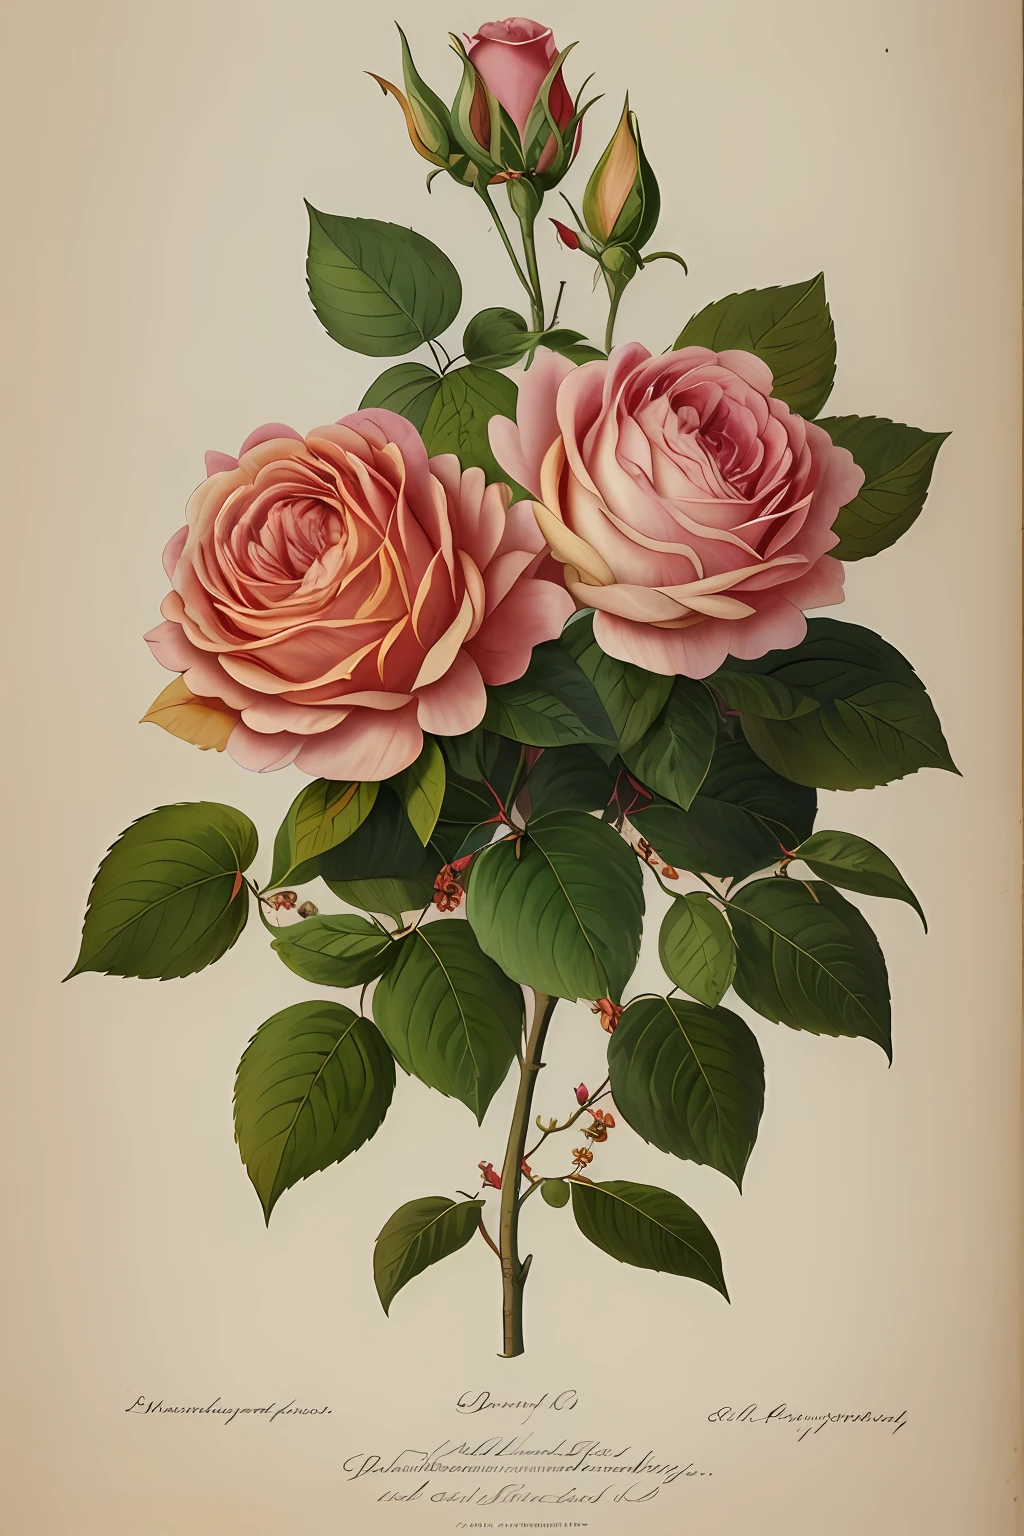 (Лучшее качество:1.2), (подробный:1.2), (шедевр:1.2), старинные ботанические иллюстрации Большой Провансальной розы (1770 1775) в высоком разрешении Джона Эдвардса